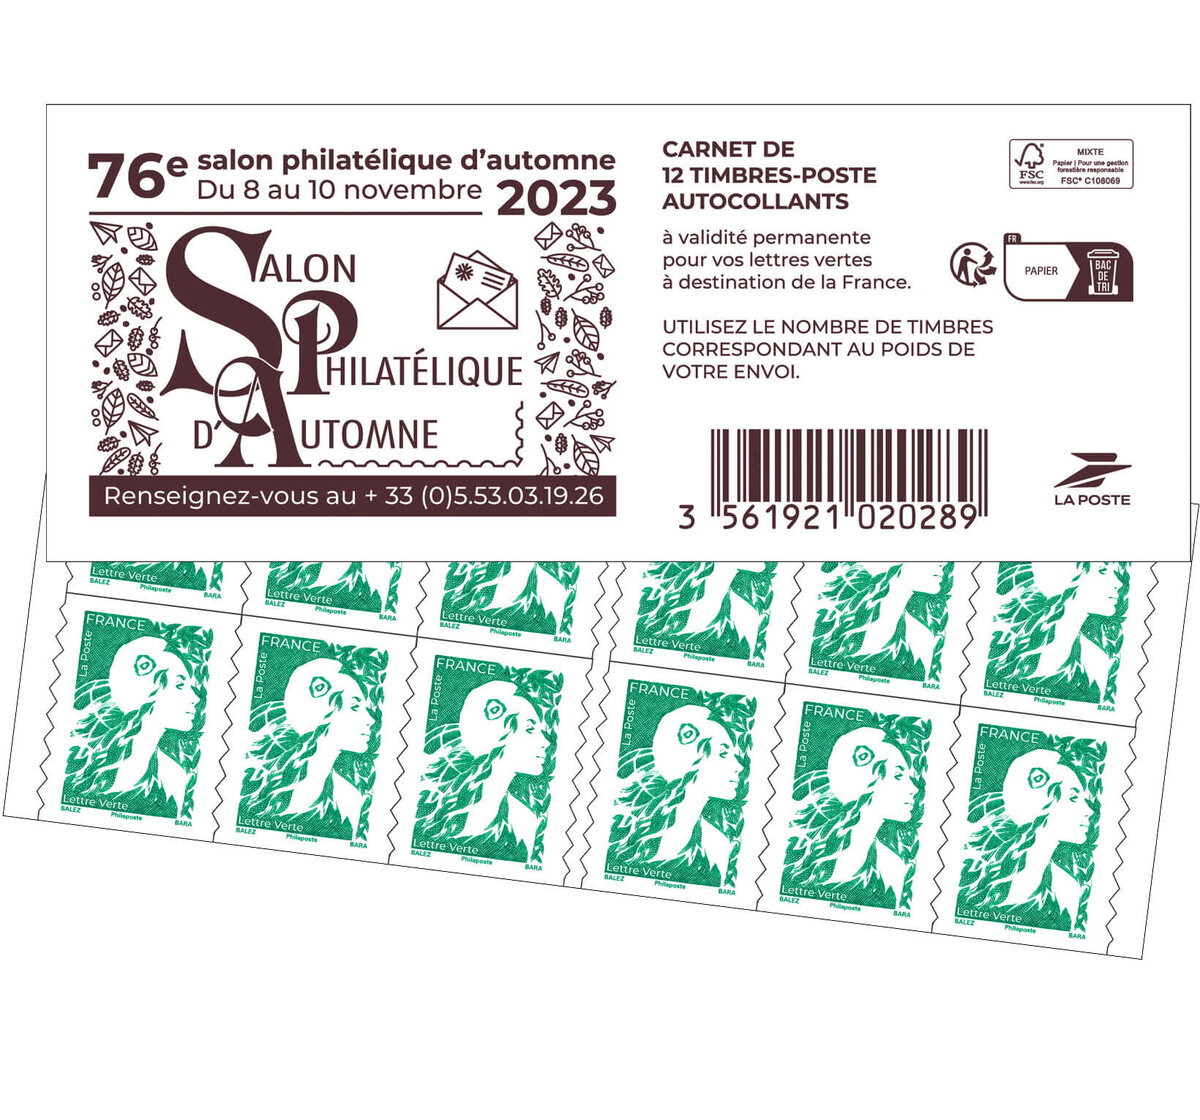 3 x Carnets de 12 timbres autocollants Lettre Verte - La Poste - 20 g -  validité permanente - OFFERT 5 enveloppes préaffranchies : :  Fournitures de bureau